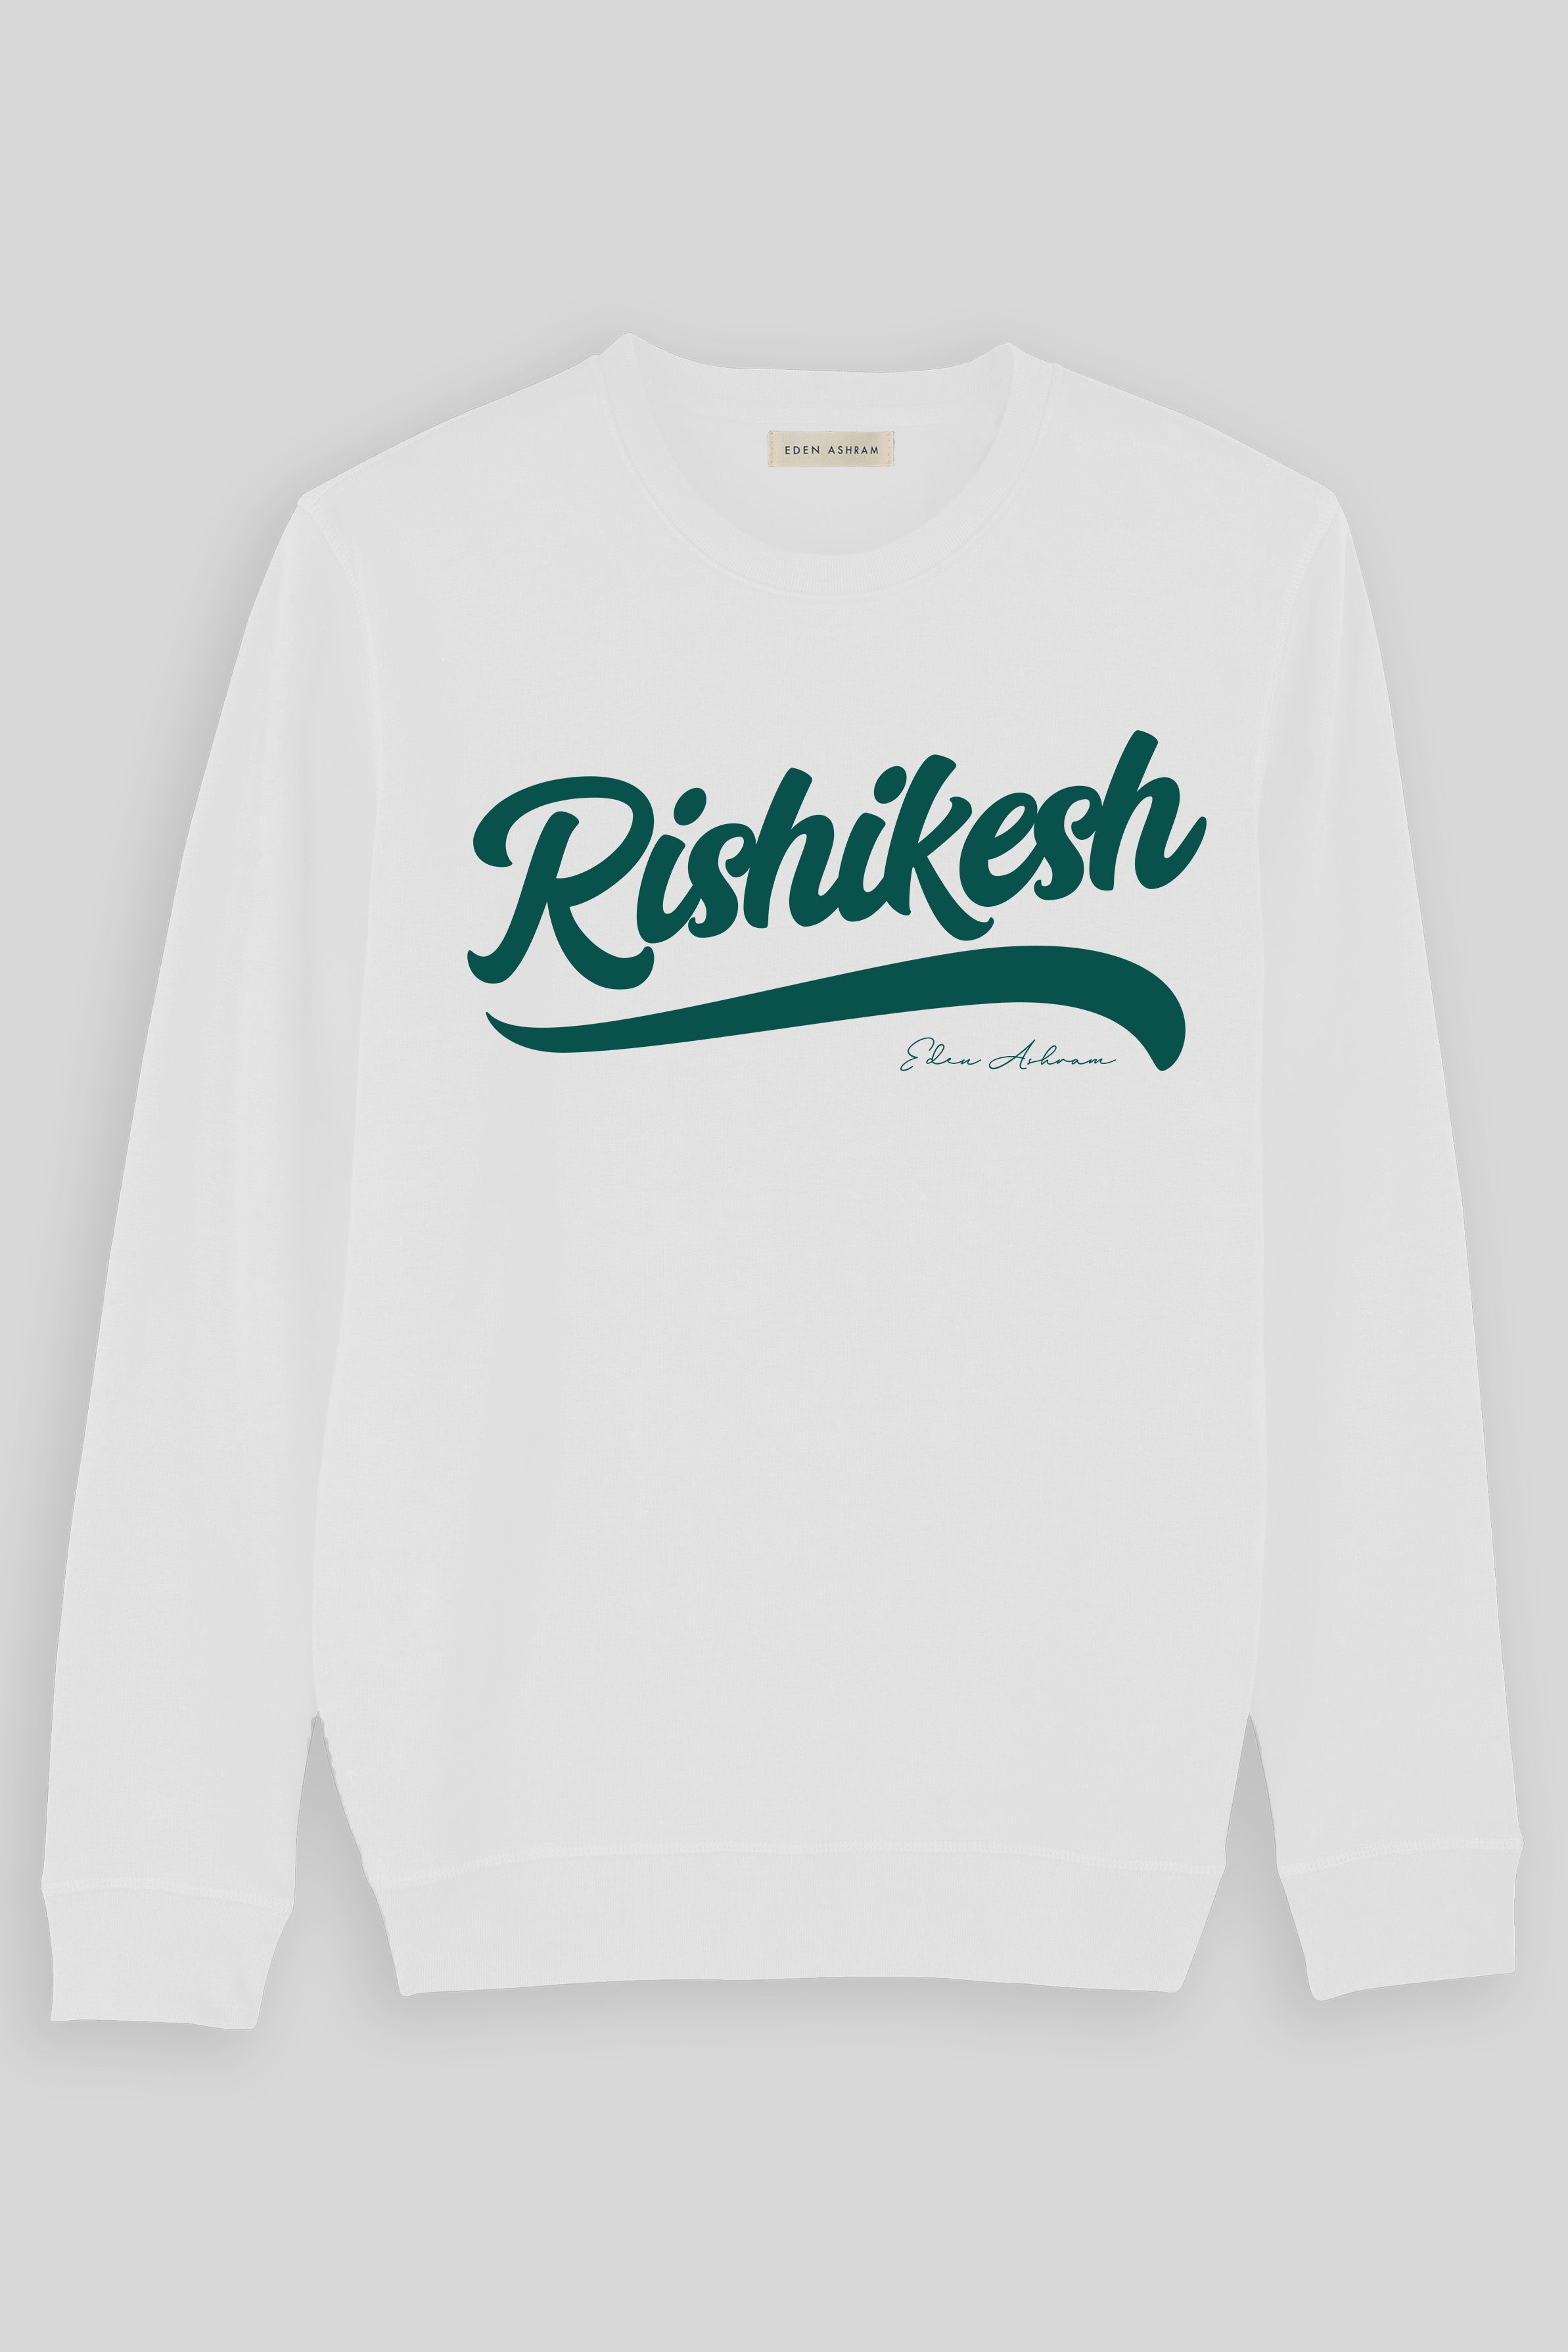 EDEN ASHRAM Rishikesh Premium Organic Crew Neck Sweatshirt White